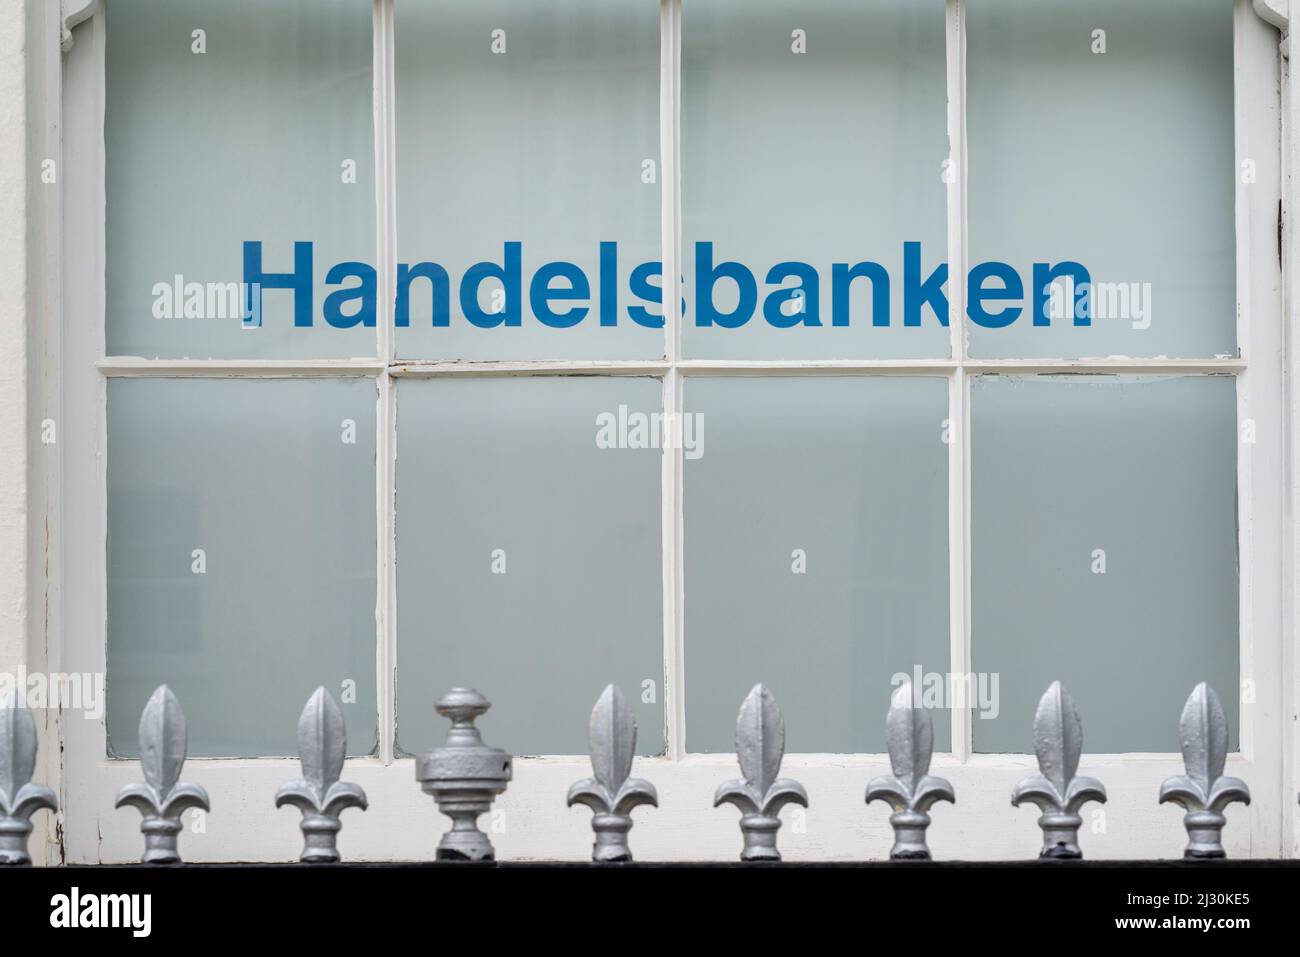 Handelsbanken Zeichen - schwedische Bankdienstleistungen - in einem Fenster in Southampton, England, Großbritannien Stockfoto